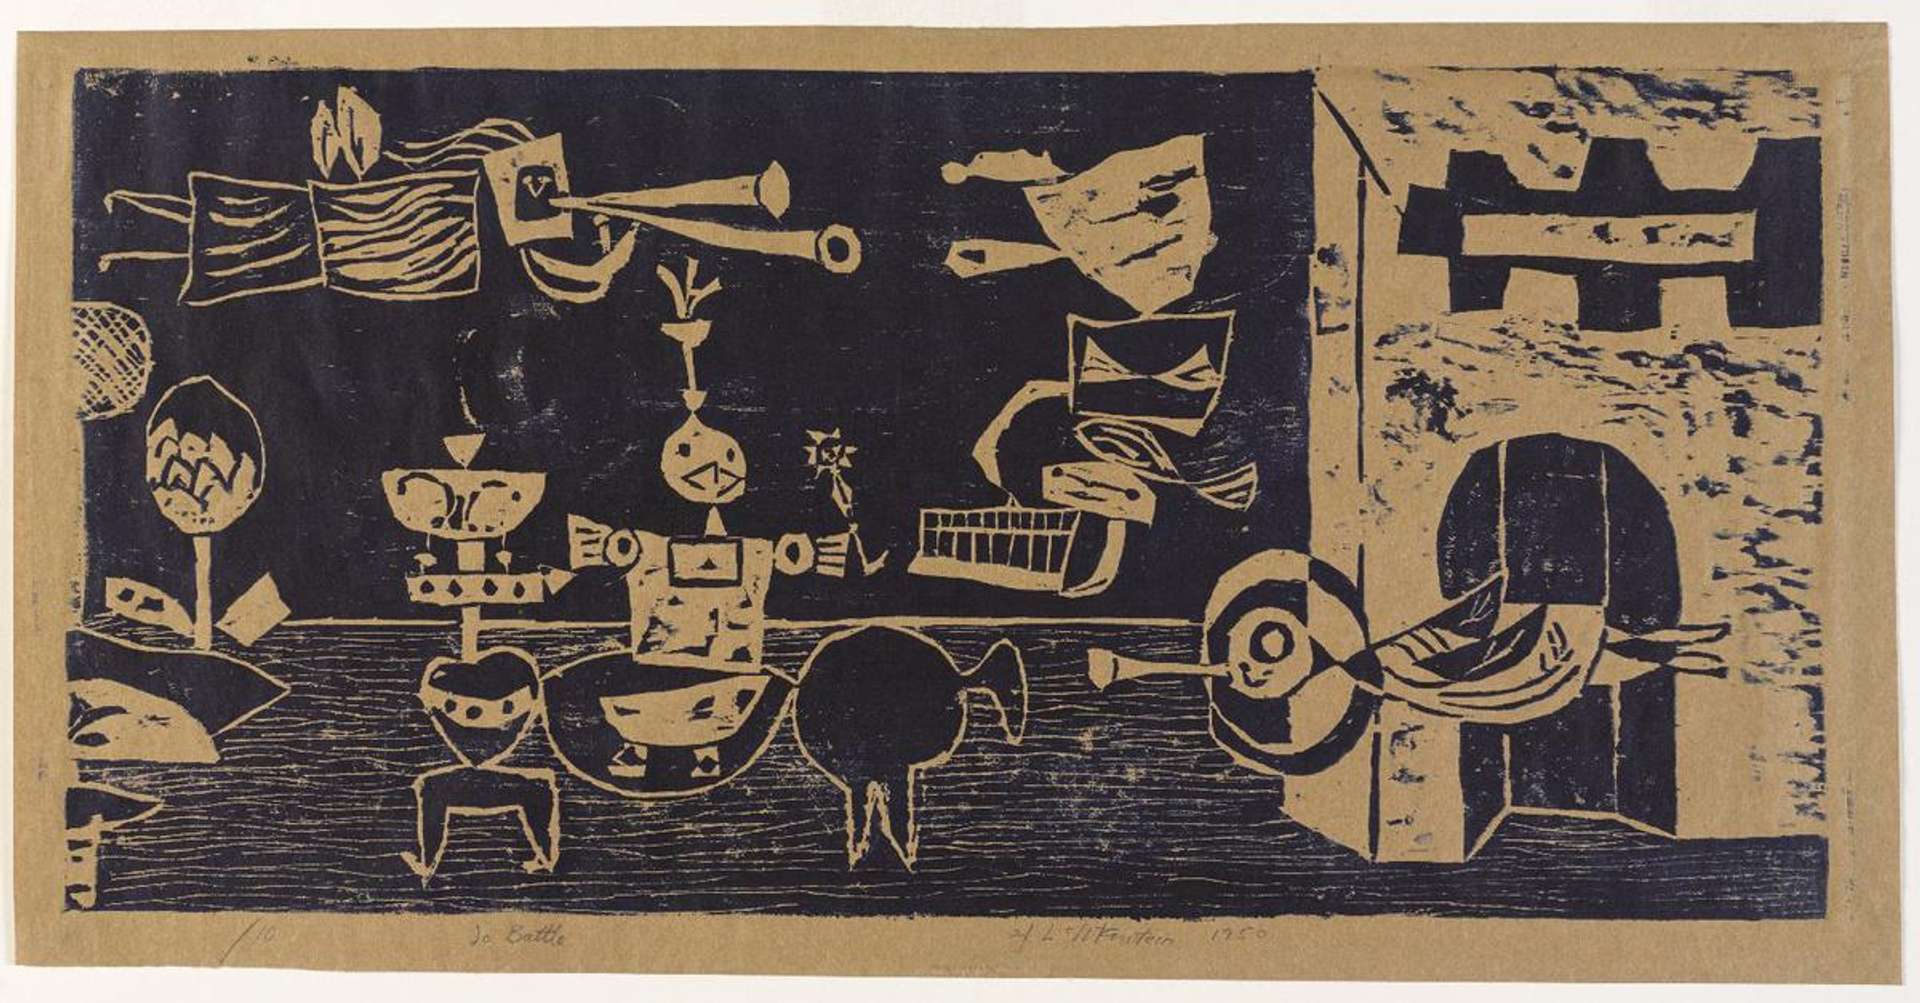 To Battle - Signed Print by Roy Lichtenstein 1950 - MyArtBroker